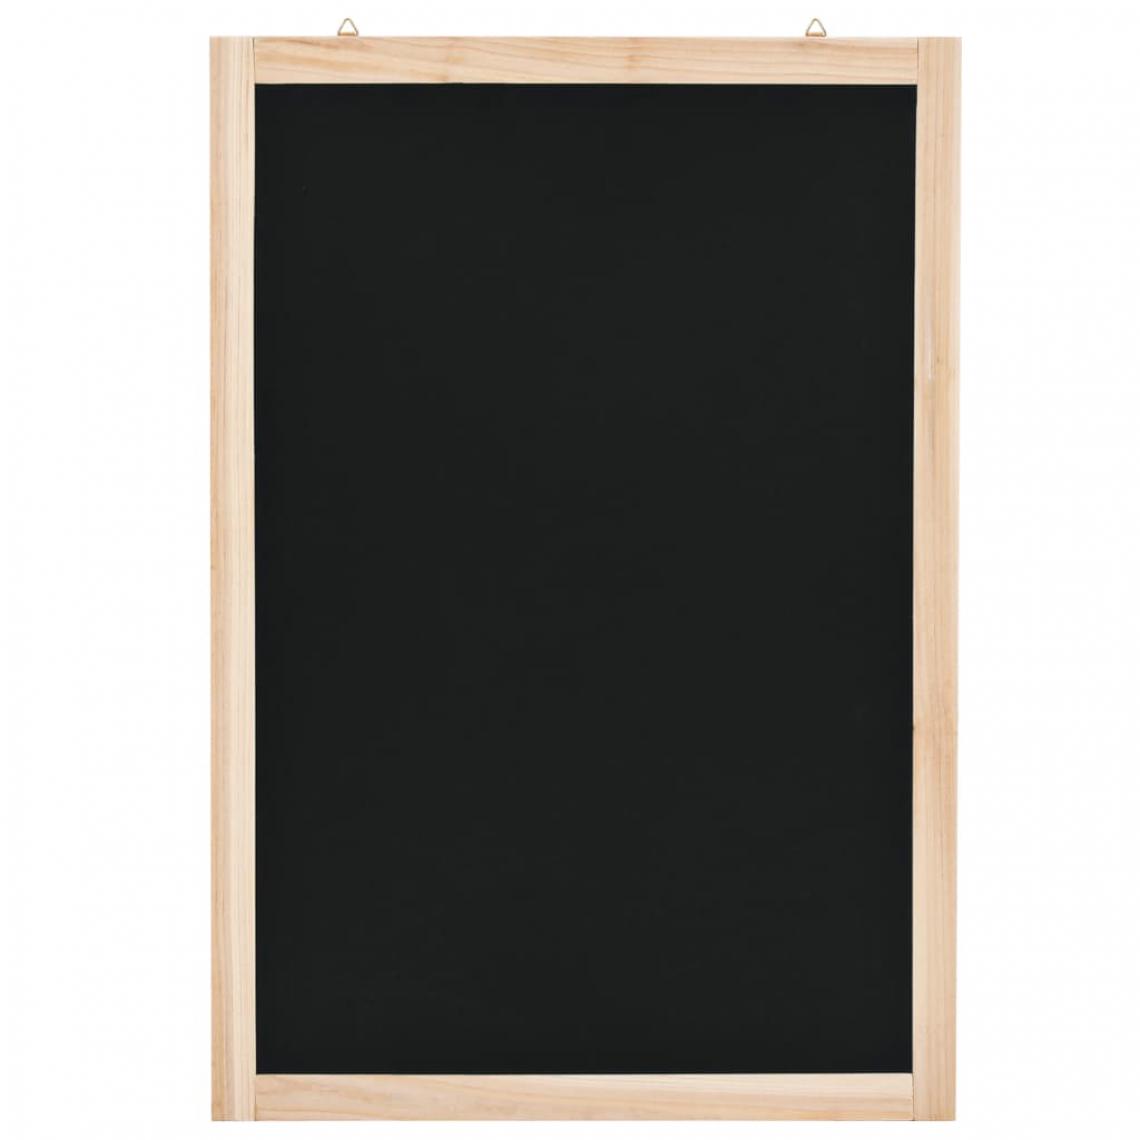 Icaverne - sublime Matériel de présentation et d'affichage reference Mascate Tableau noir mural Bois de cèdre 40 x 60 cm - Ardoises et tableaux